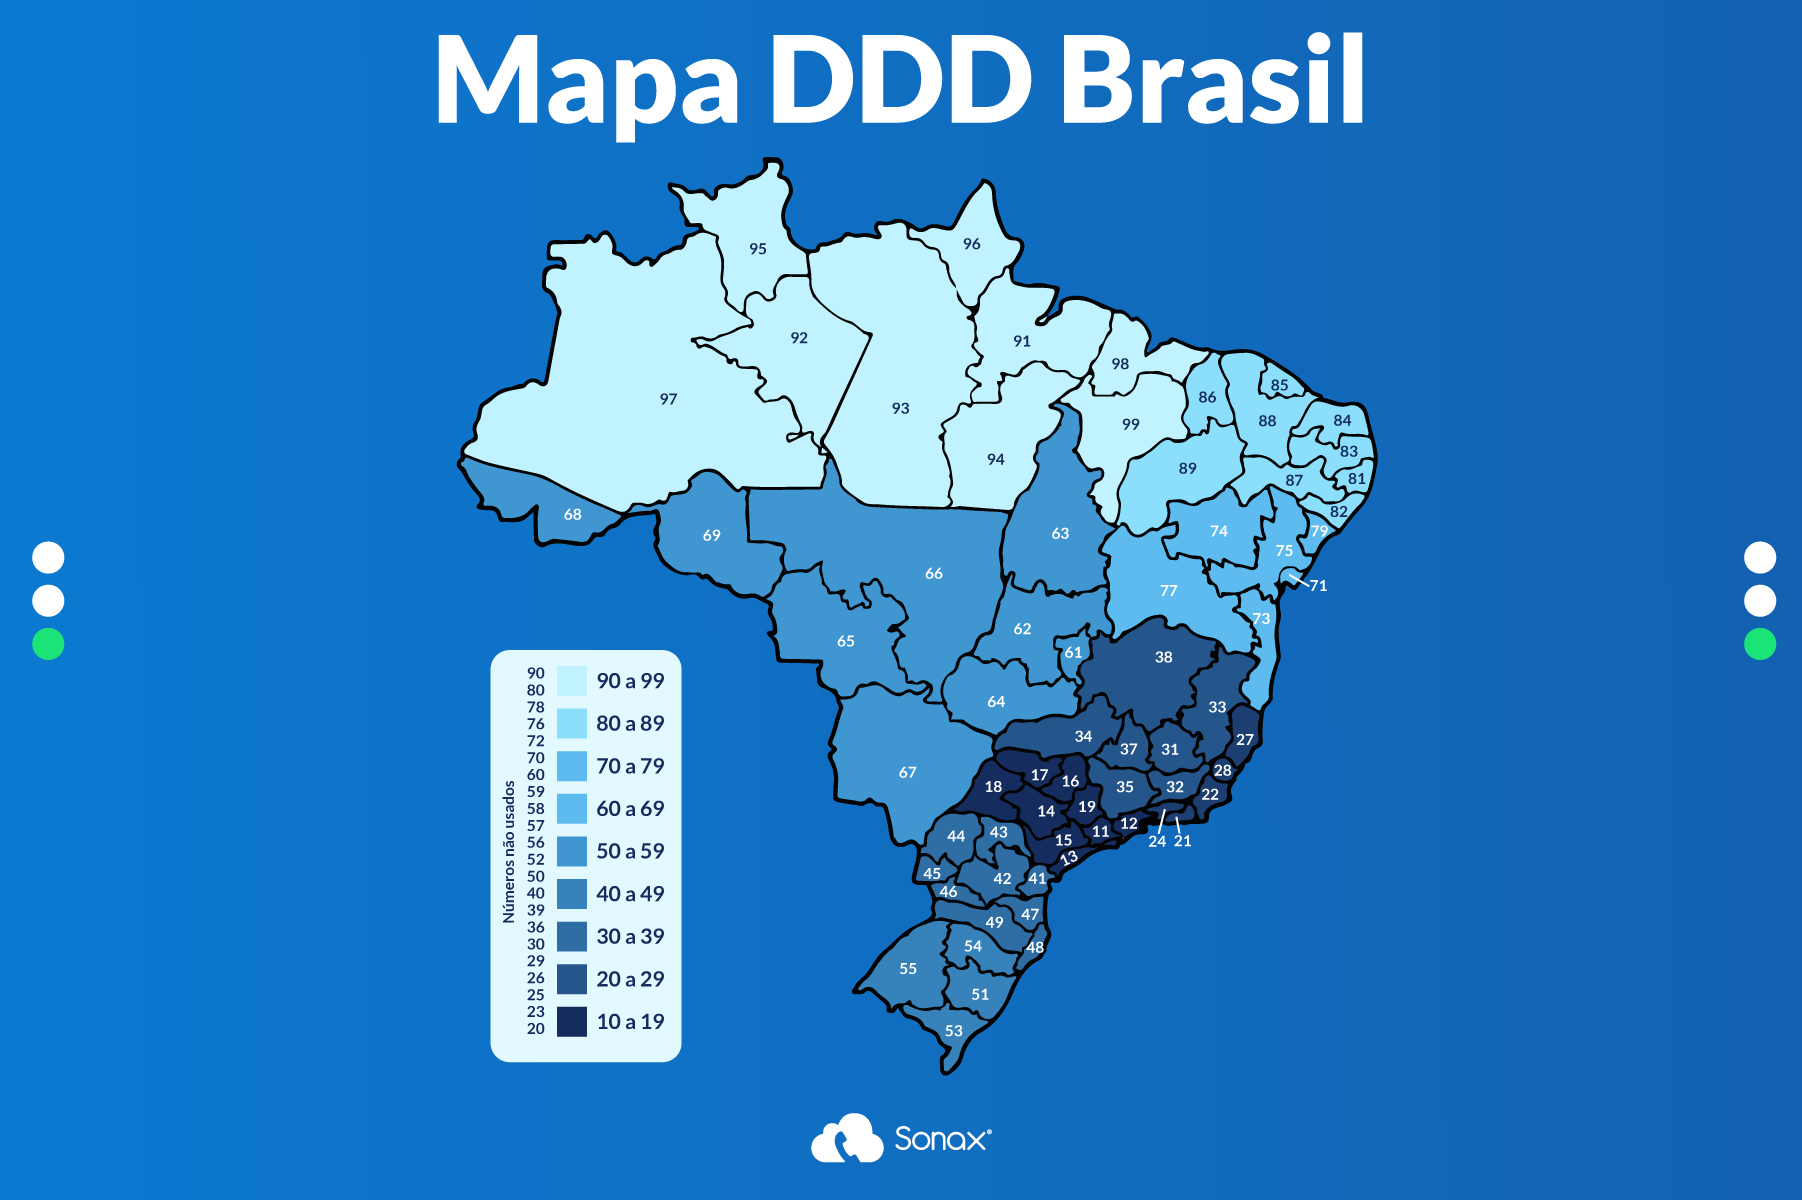 Lista completa dos DDD do Brasil com as respectivas localizações